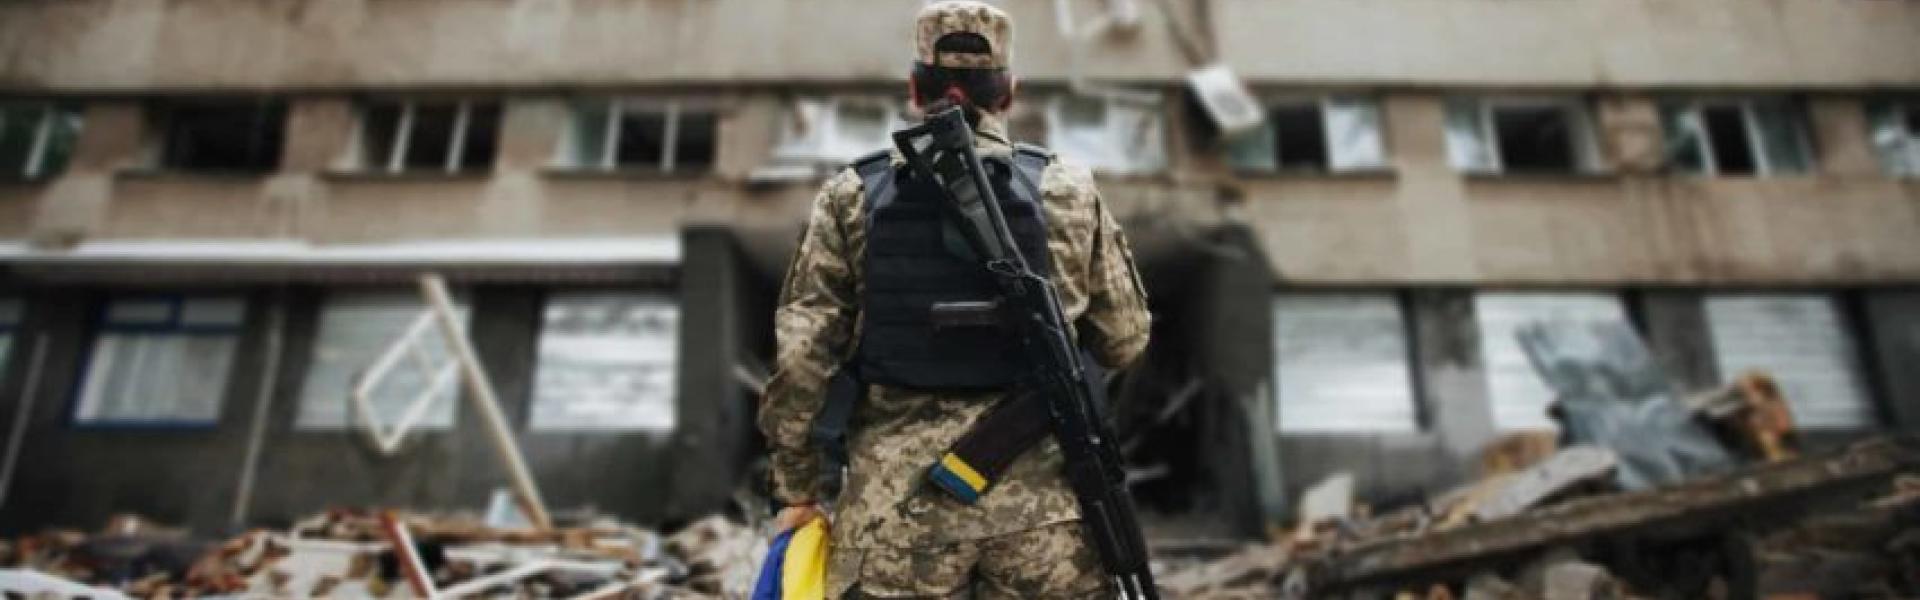 Ukraine soldier holding flag